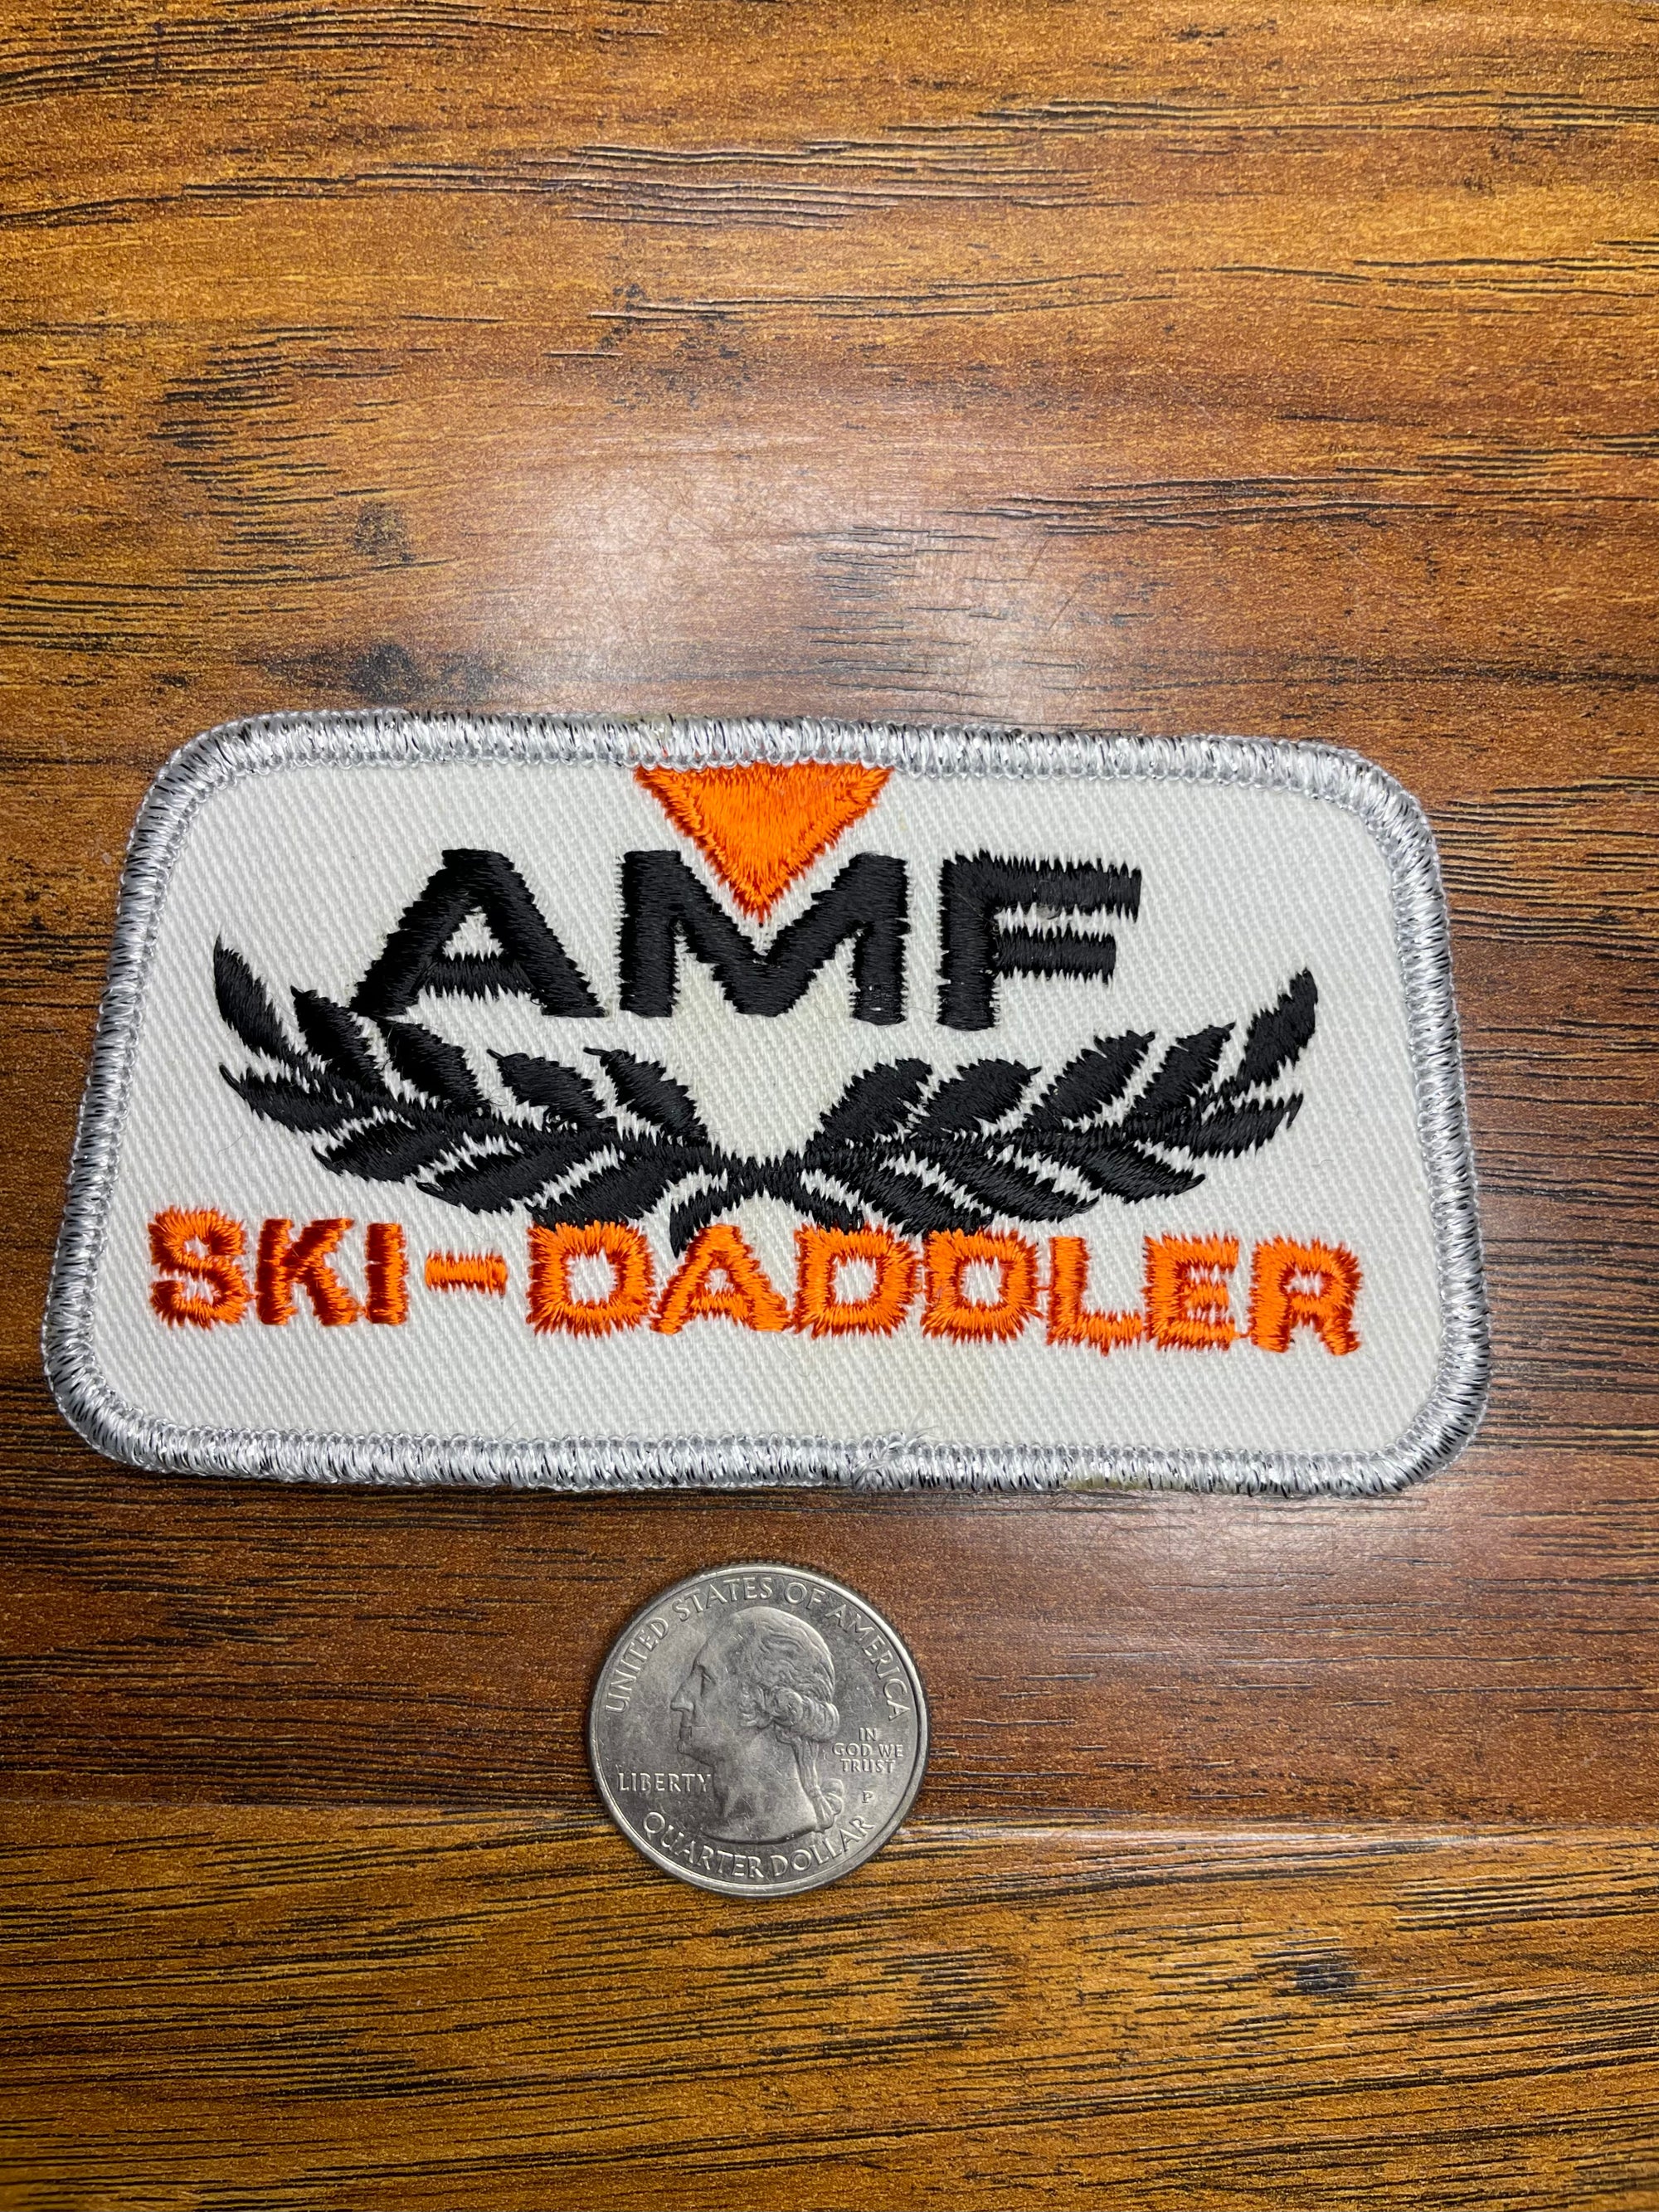 Vintage AMF Ski- Daddler